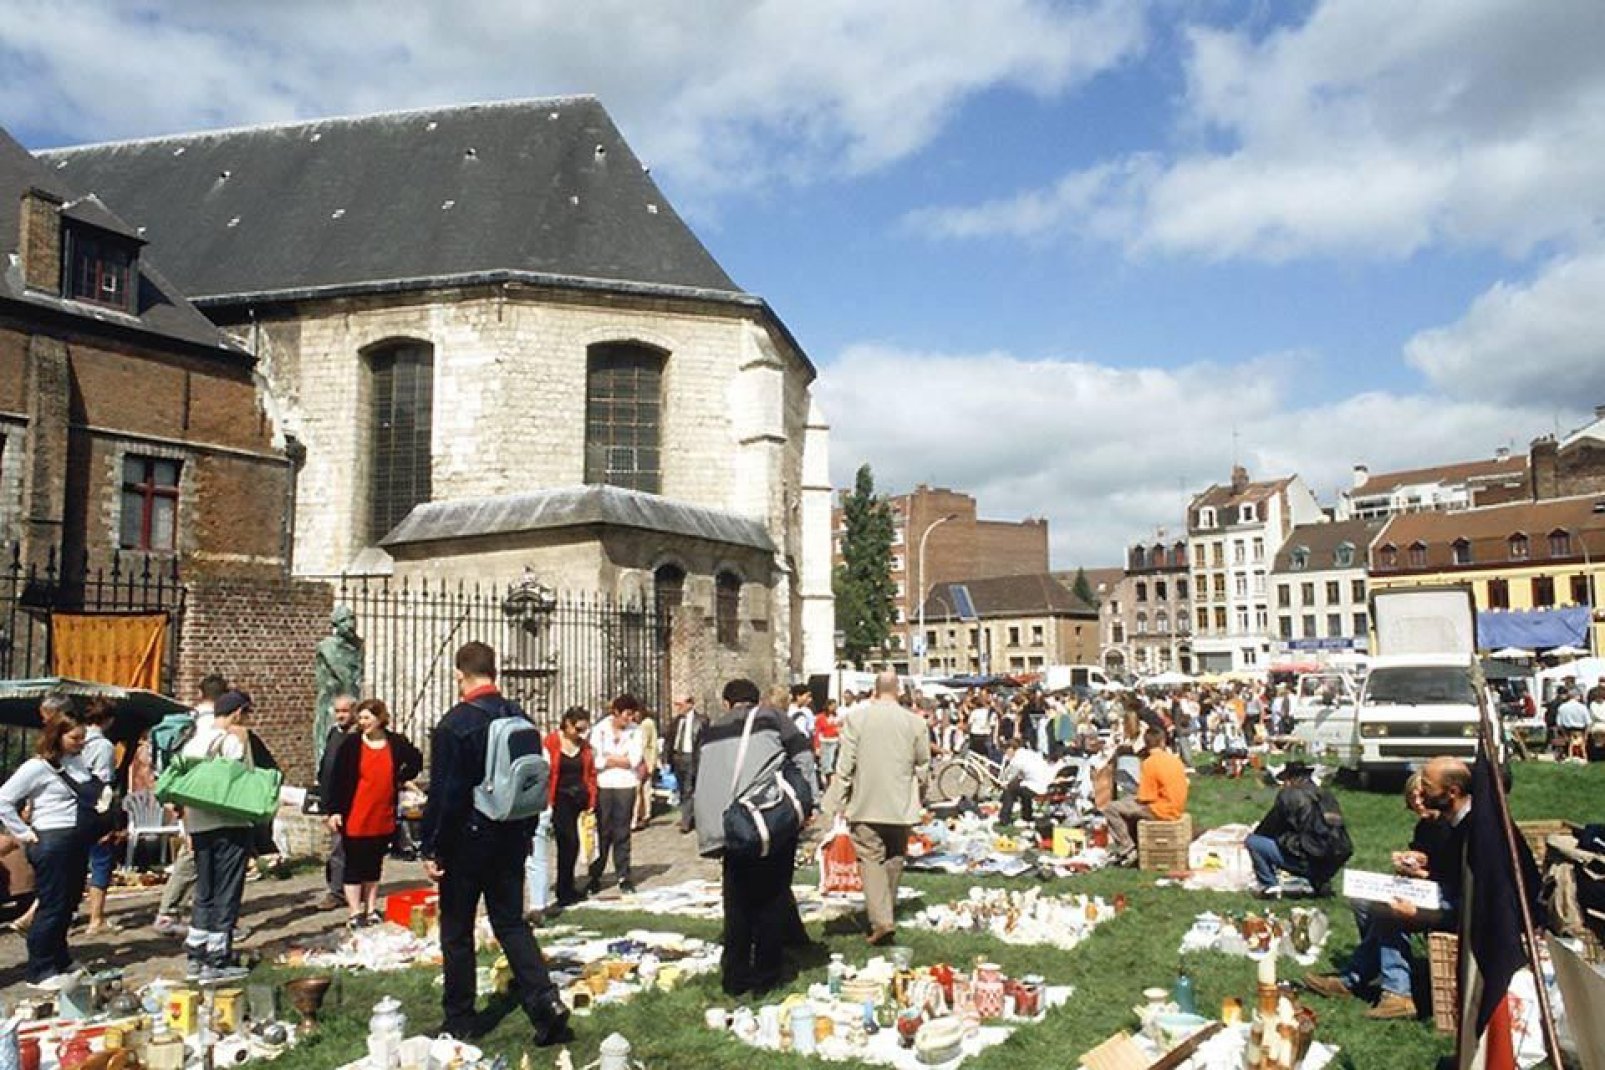 Alljährlich findet am ersten Septemberwochenende in den Straßen von Lille ein großer Trödelmarkt statt. Dieser zählt zu den weltweit größten seiner Art und zieht jährlich mehrere Millionen Besucher an!